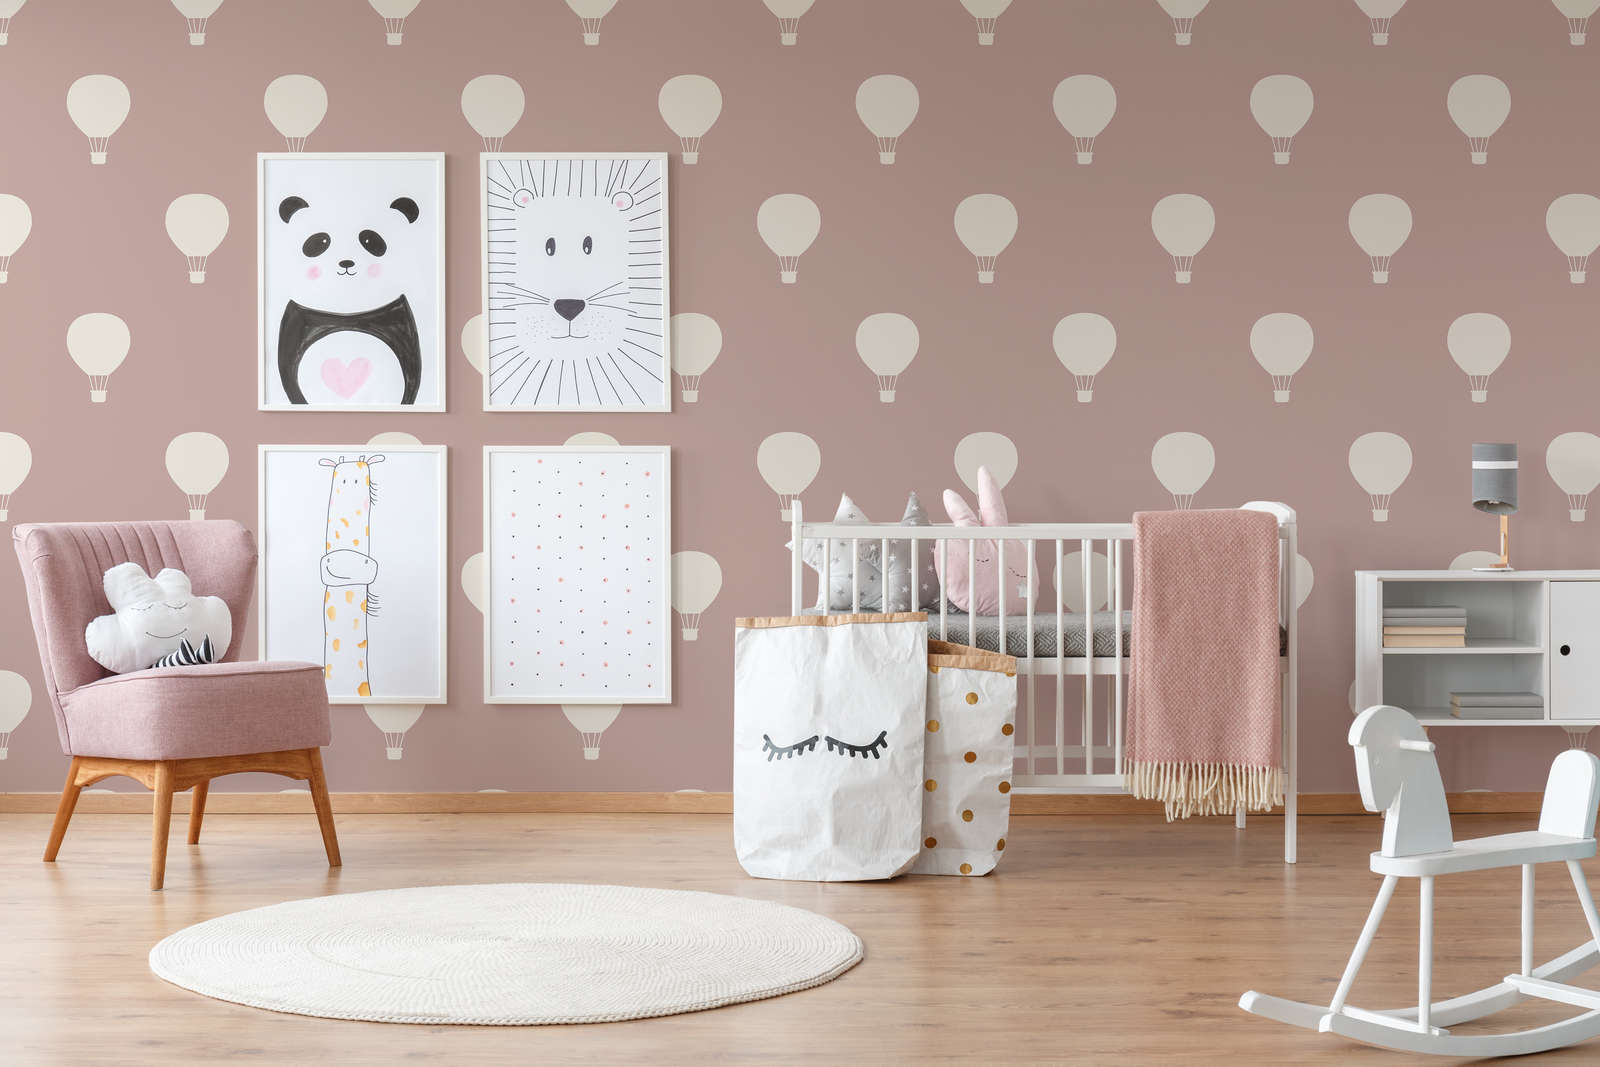             Kinderkamer behang met hete ballon motief - crème, roze
        